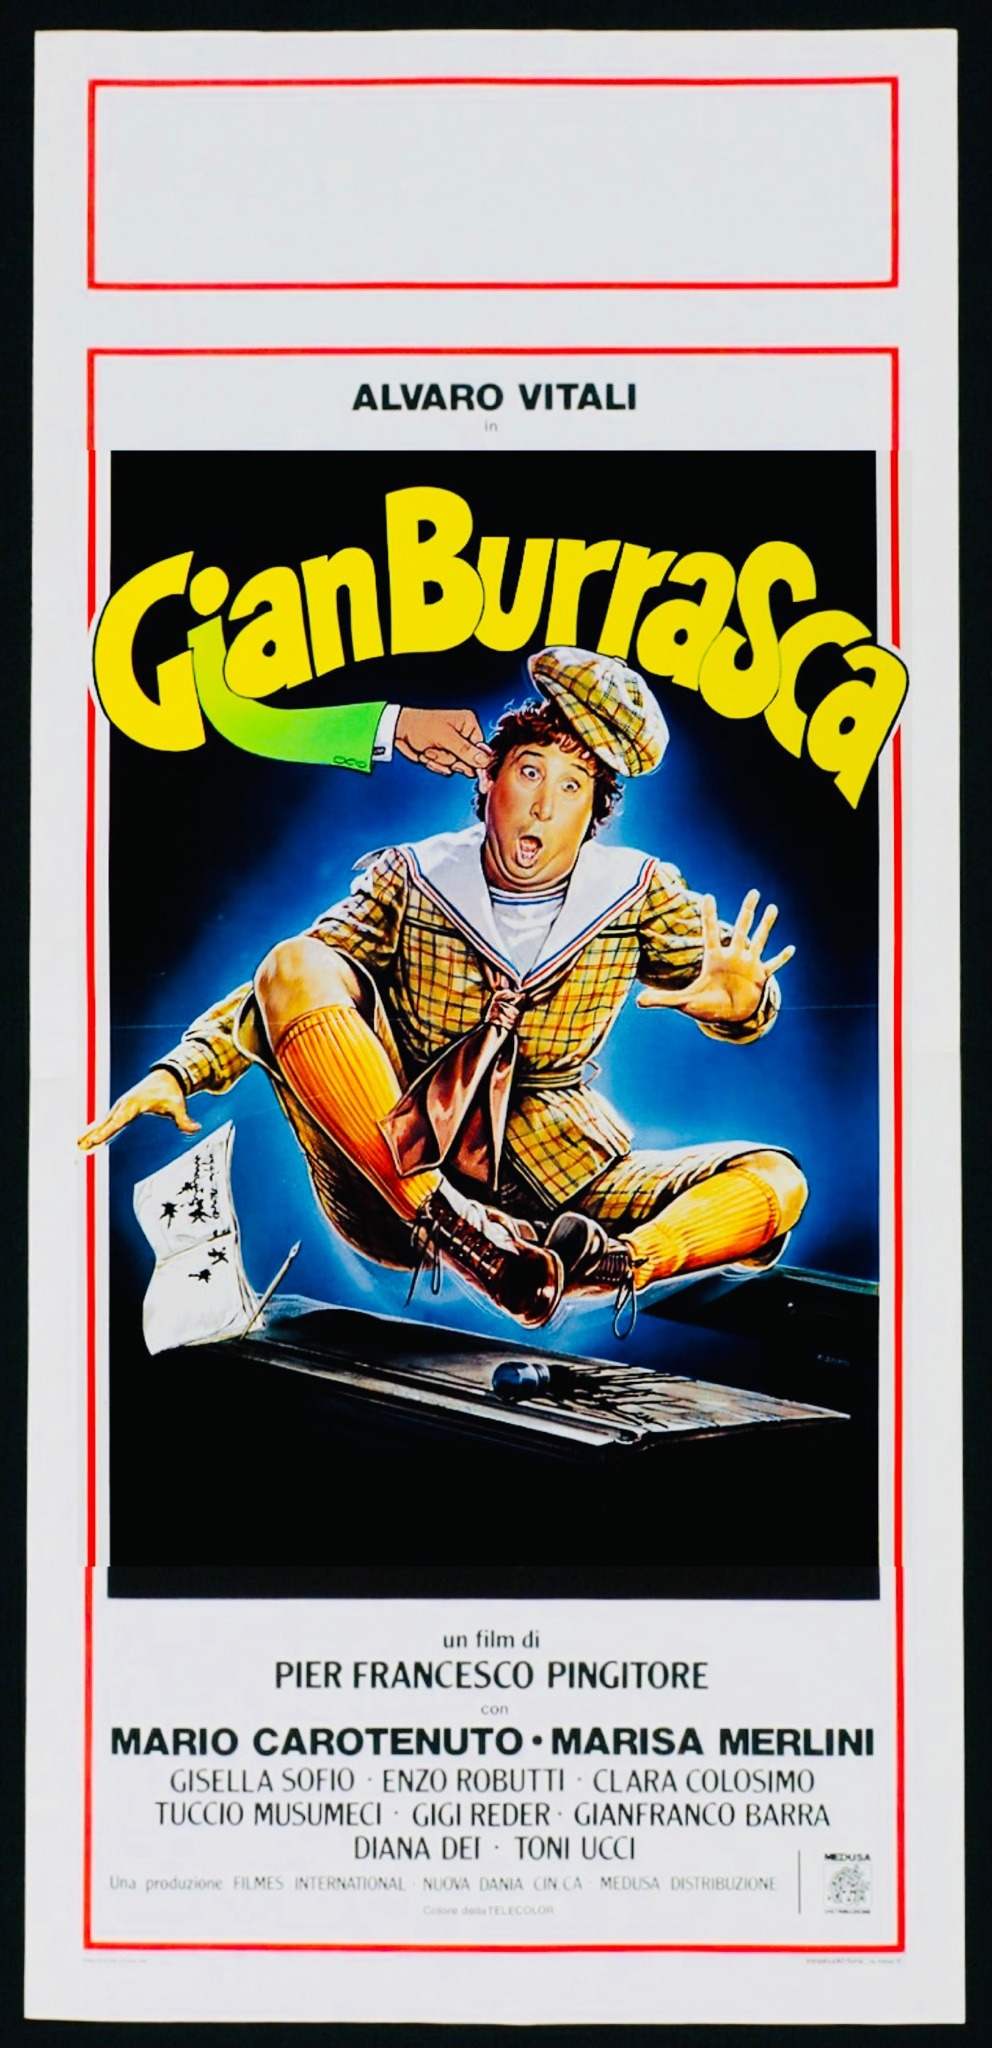 Gian Burrasca (1982) Screenshot 1